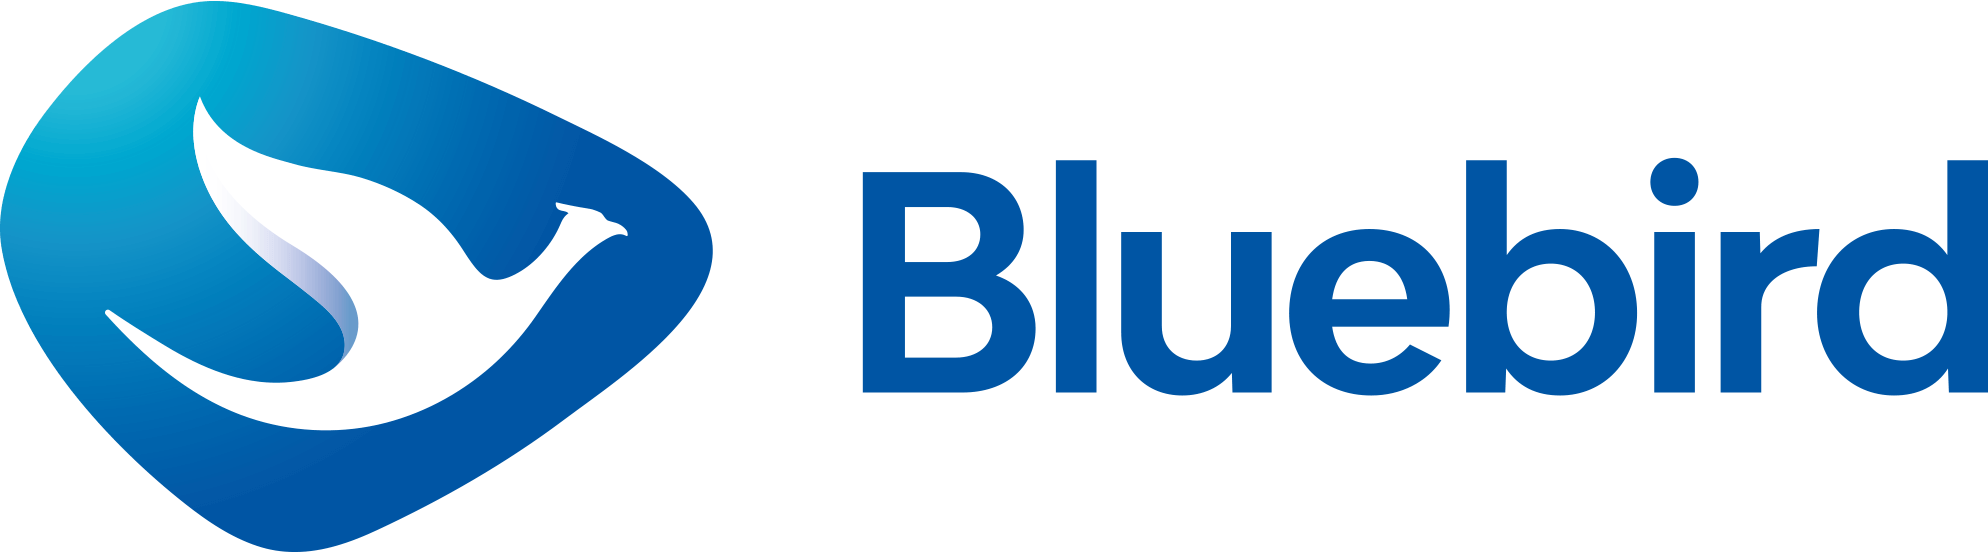 Blue Bird Taxi Logo - Bluebird – Blue Bird Taxi Promo Indonesia | BlueBird